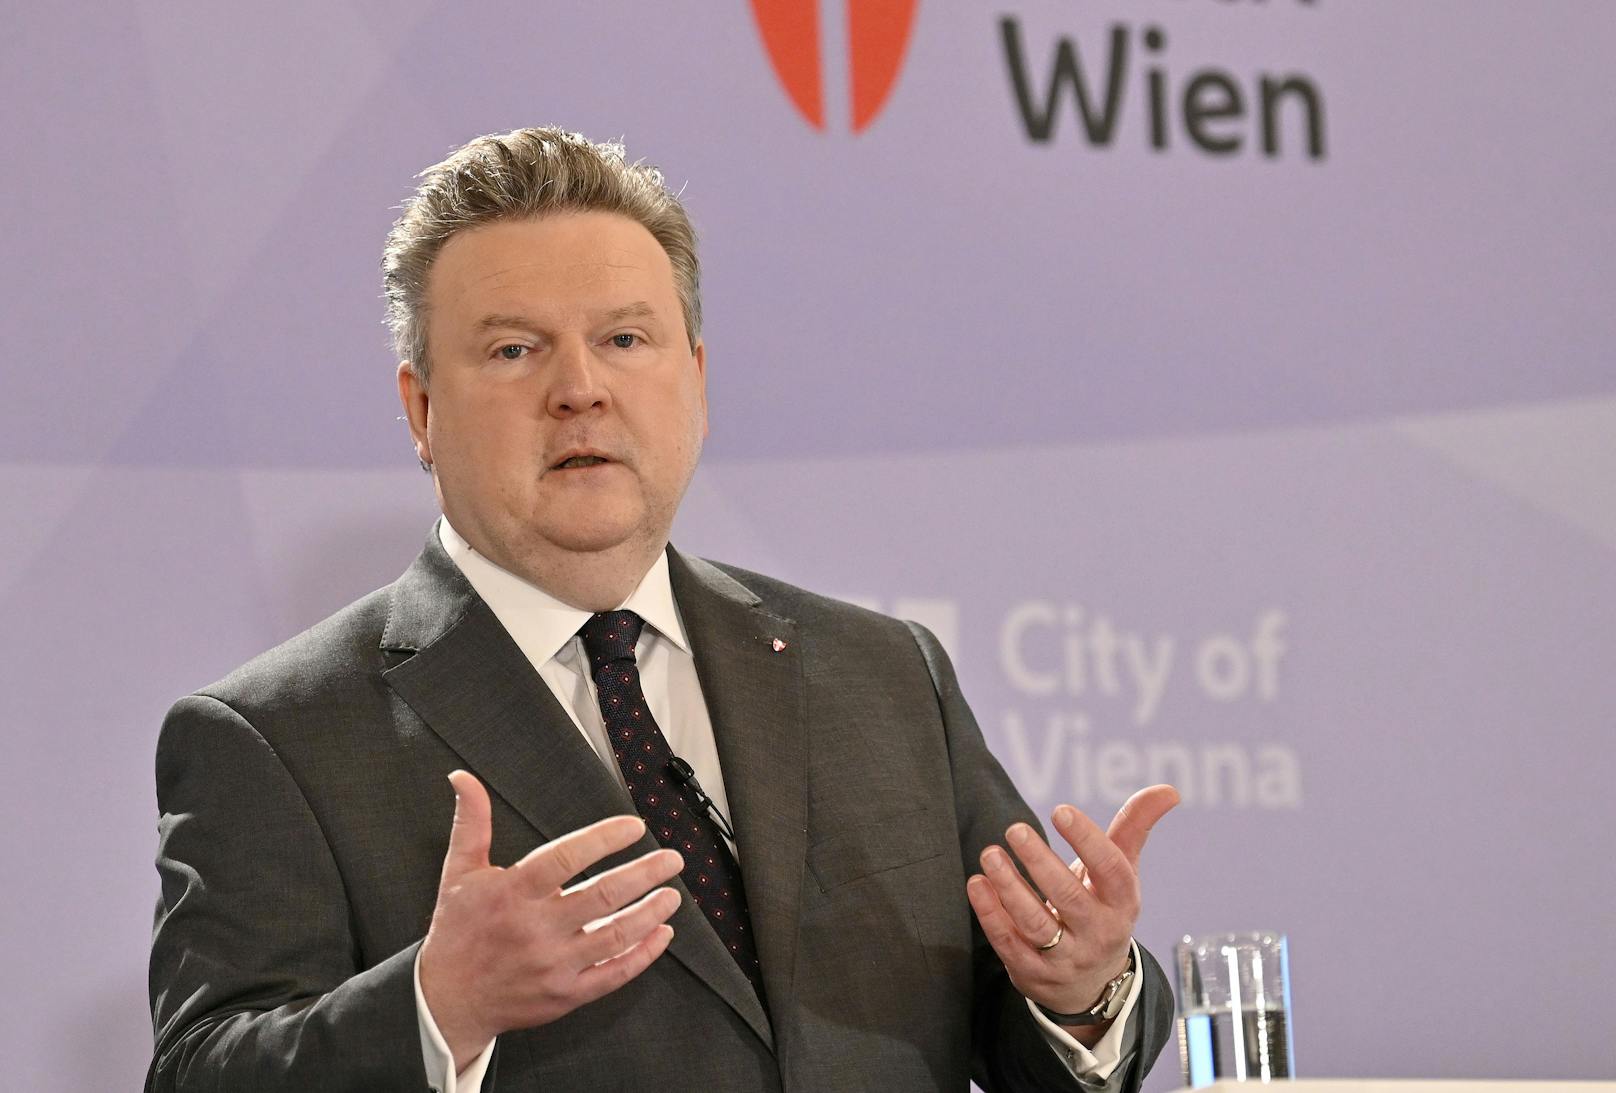 Wiens Bürgermeister Michael Ludwig erhielt die größte Zustimmung unter den Befragten.